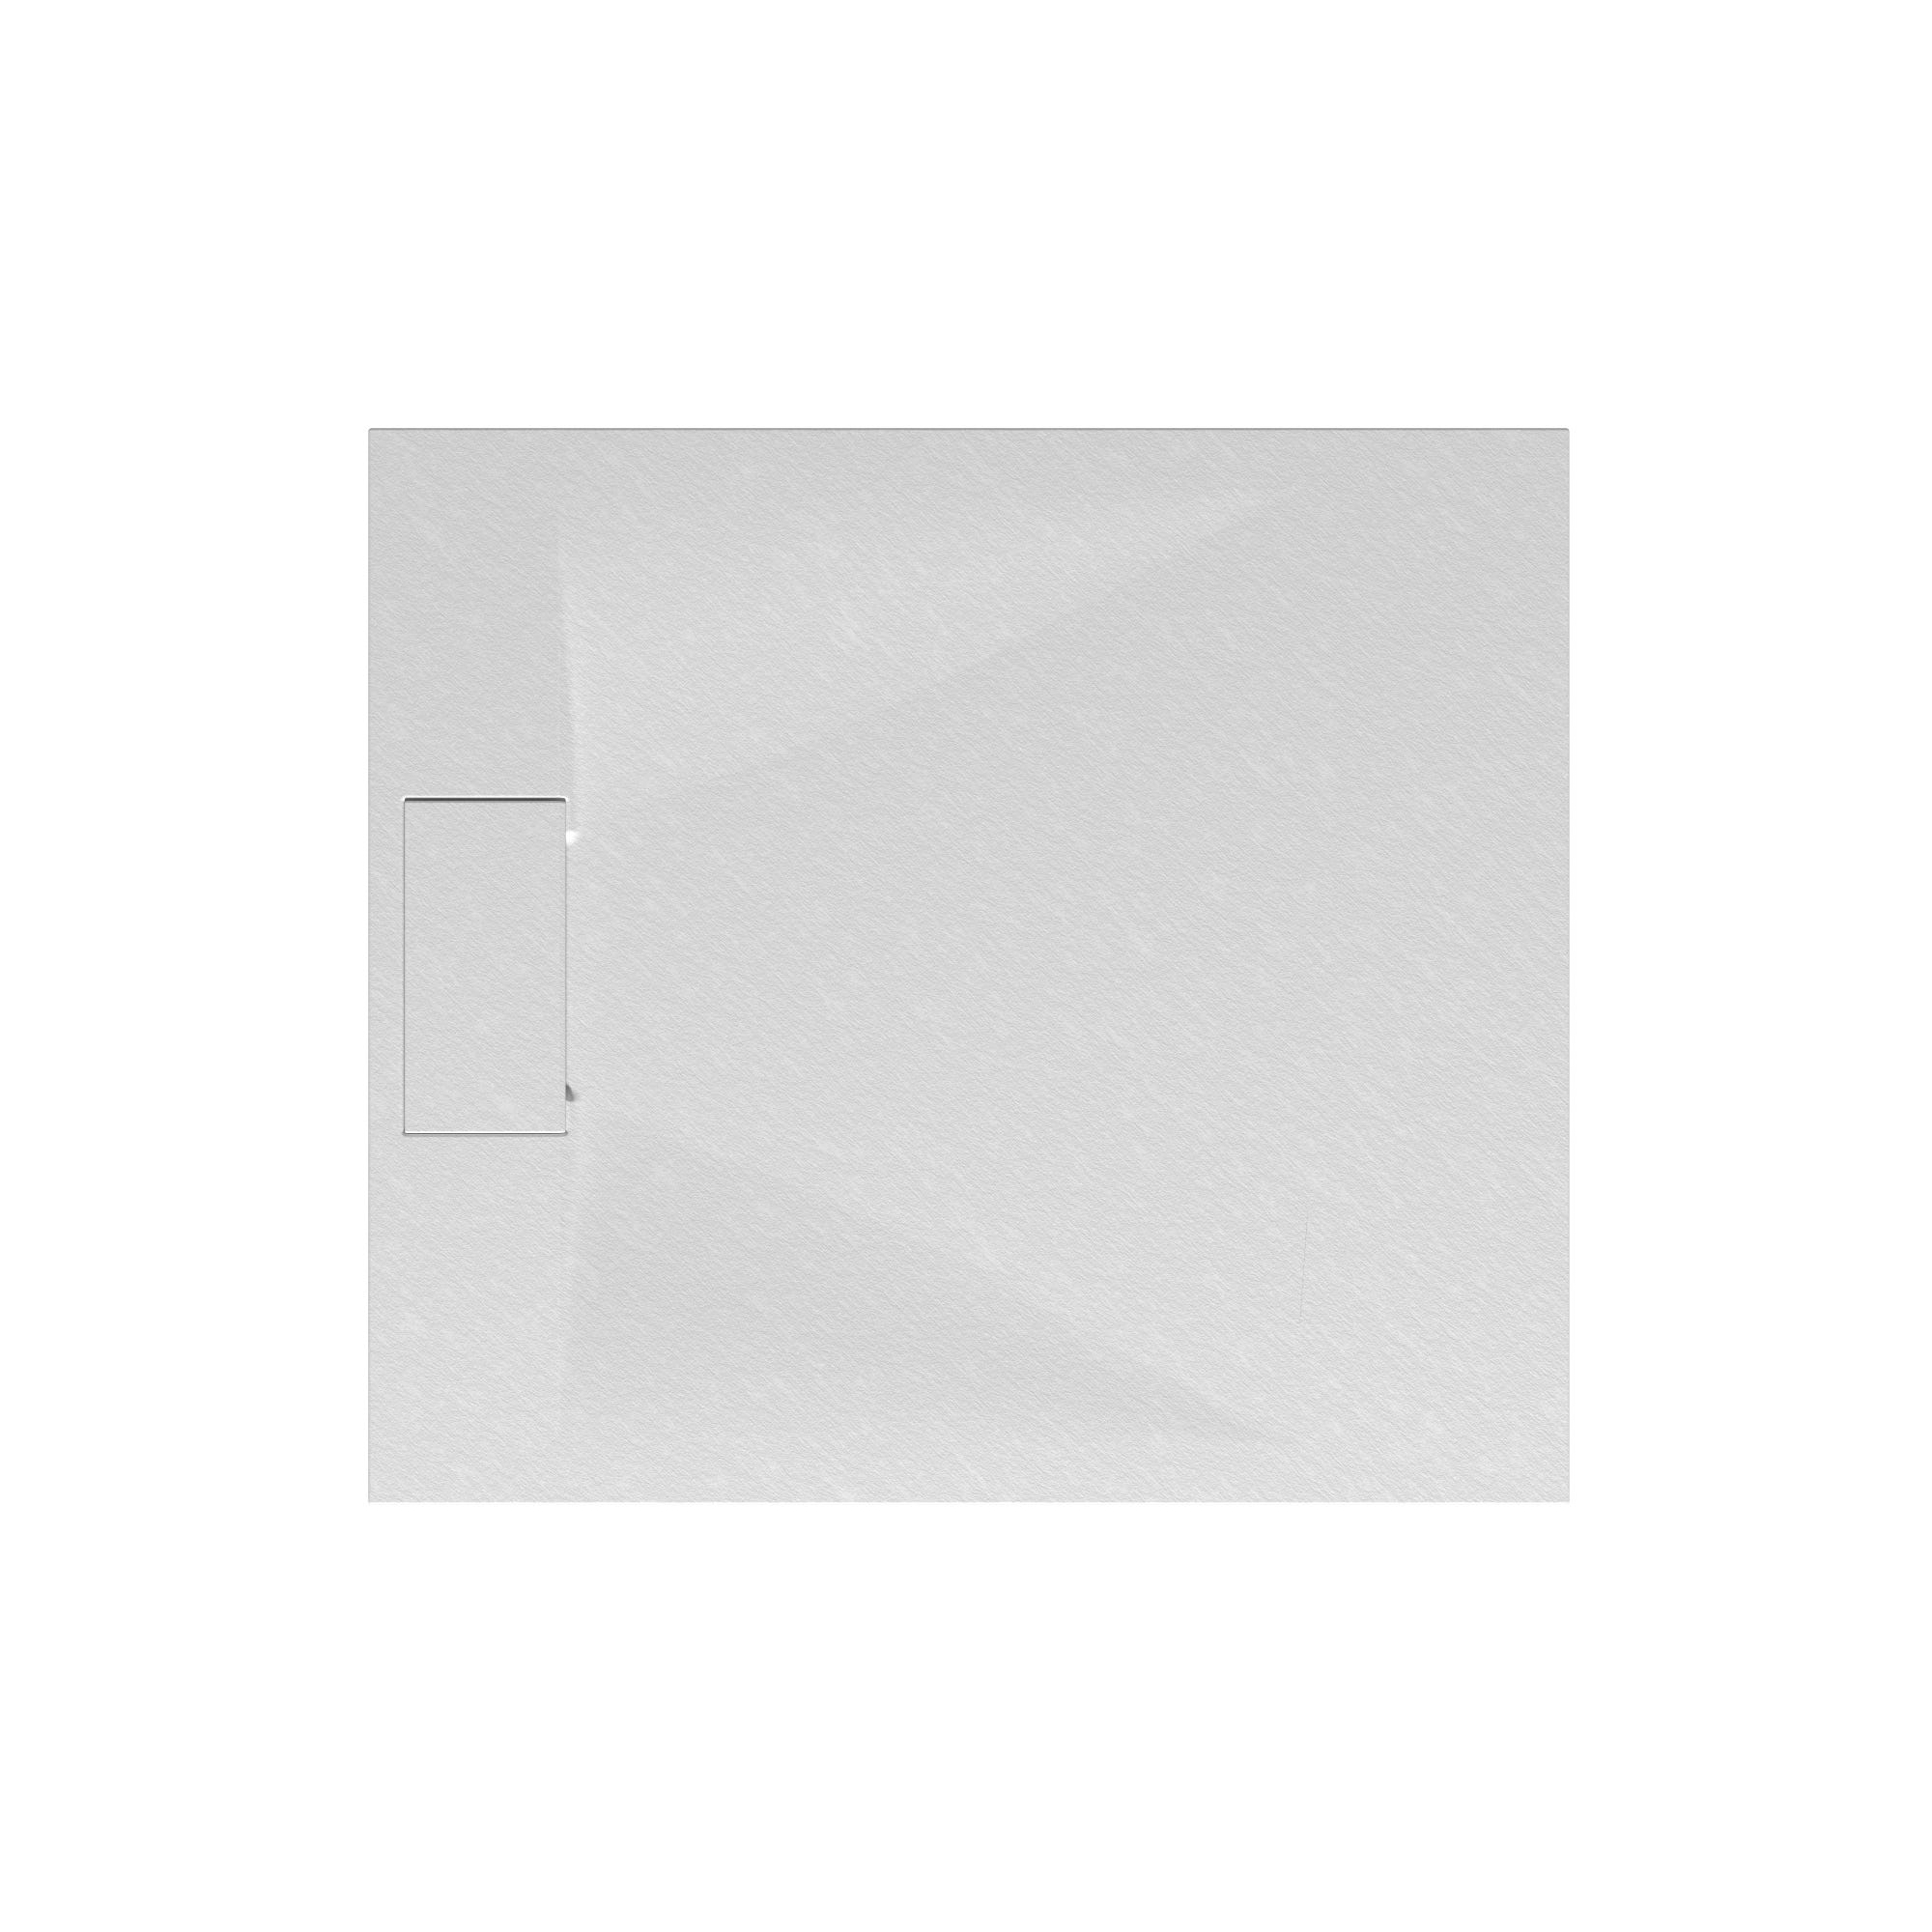 Schulte receveur de douche 90 x 100 x 3,2cm, blanc effet pierre ultra légers, rectangulaire, extra plat à poser ou à encastrer, bac à douche 1